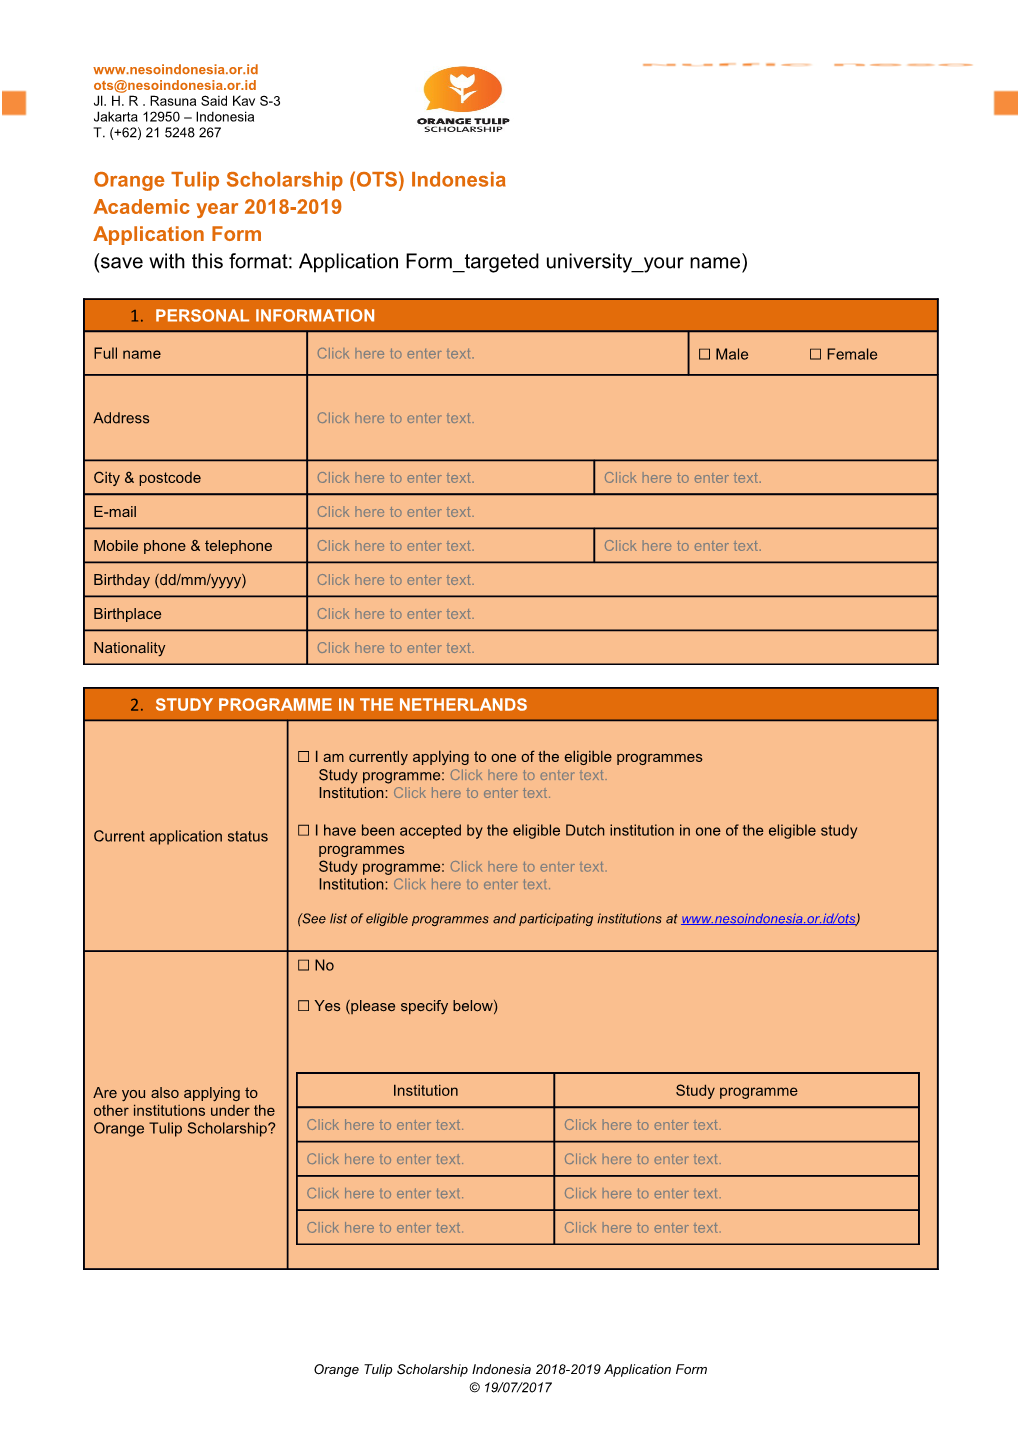 Orange Tulip Scholarship (OTS) Indonesia